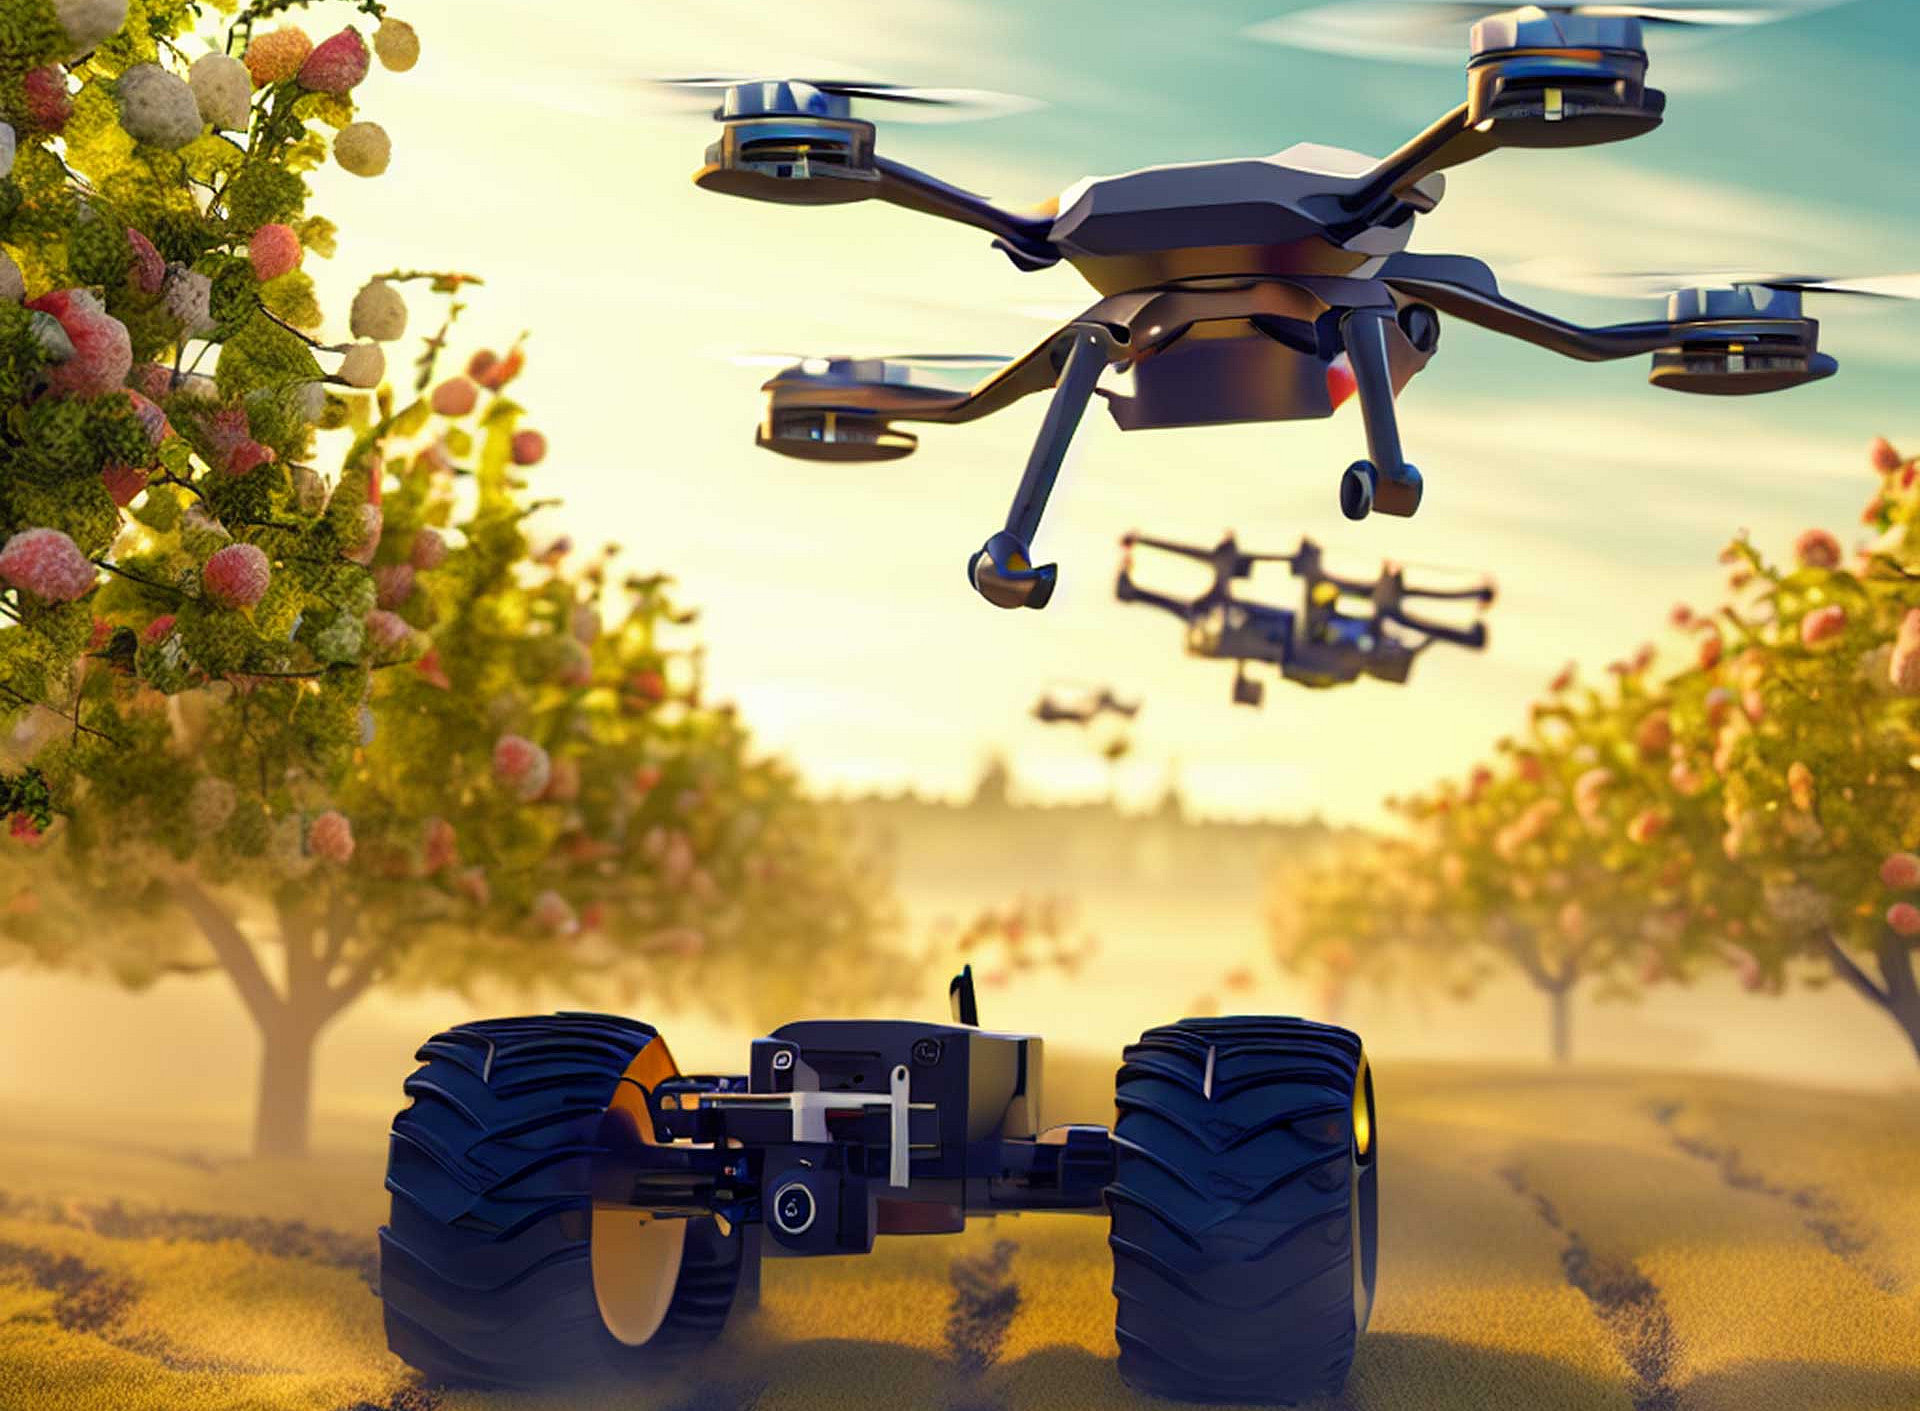 Grafik: Drohnen im Obstgarten 